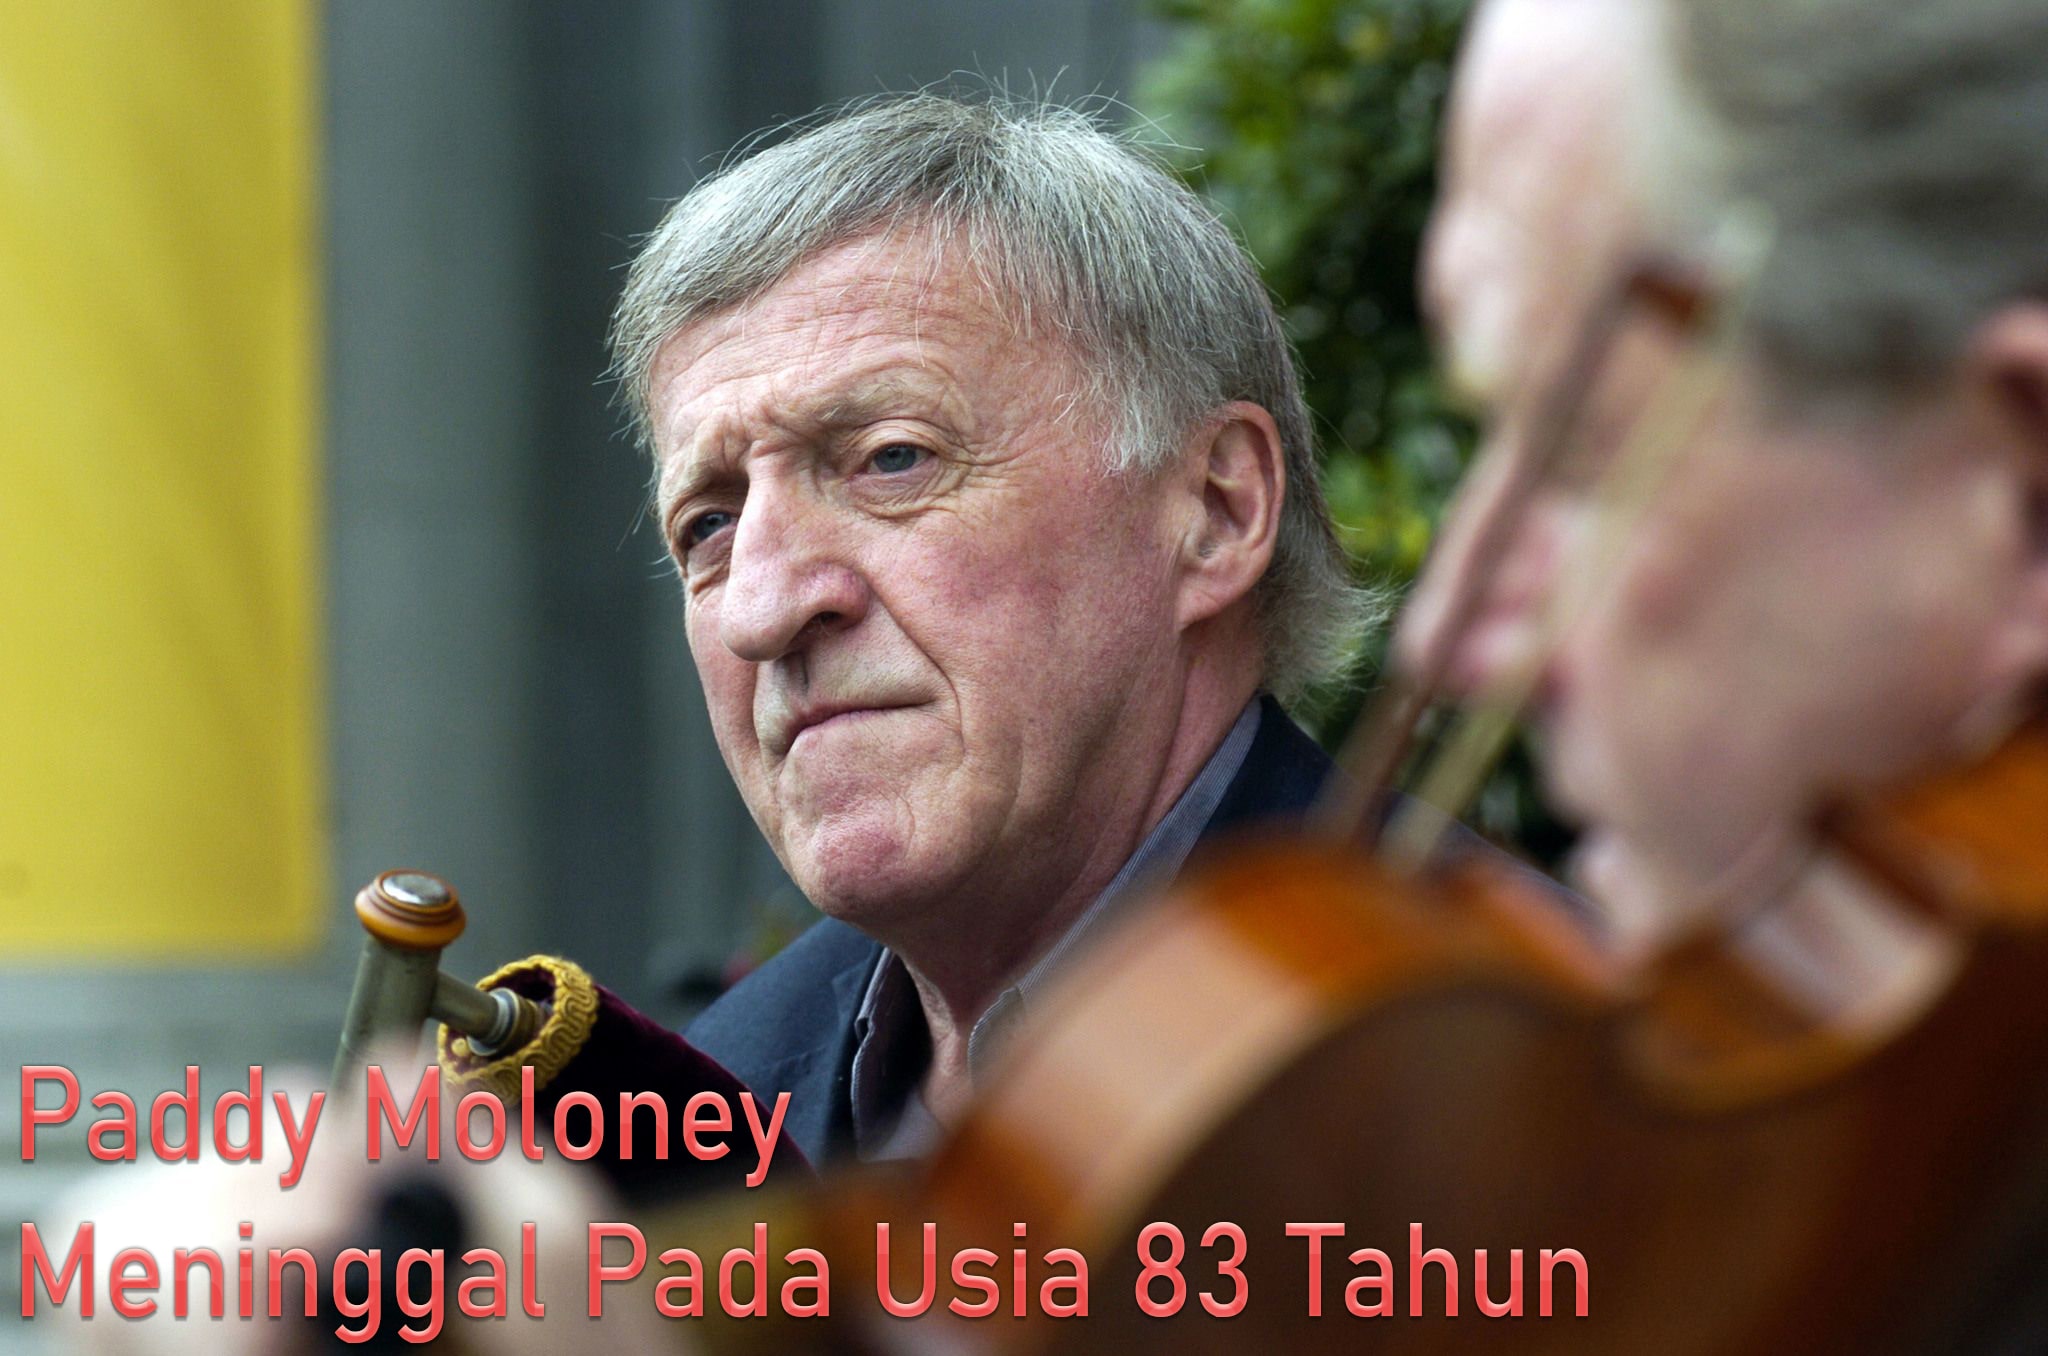 Paddy Moloney Meninggal Pada Usia 83 Tahun